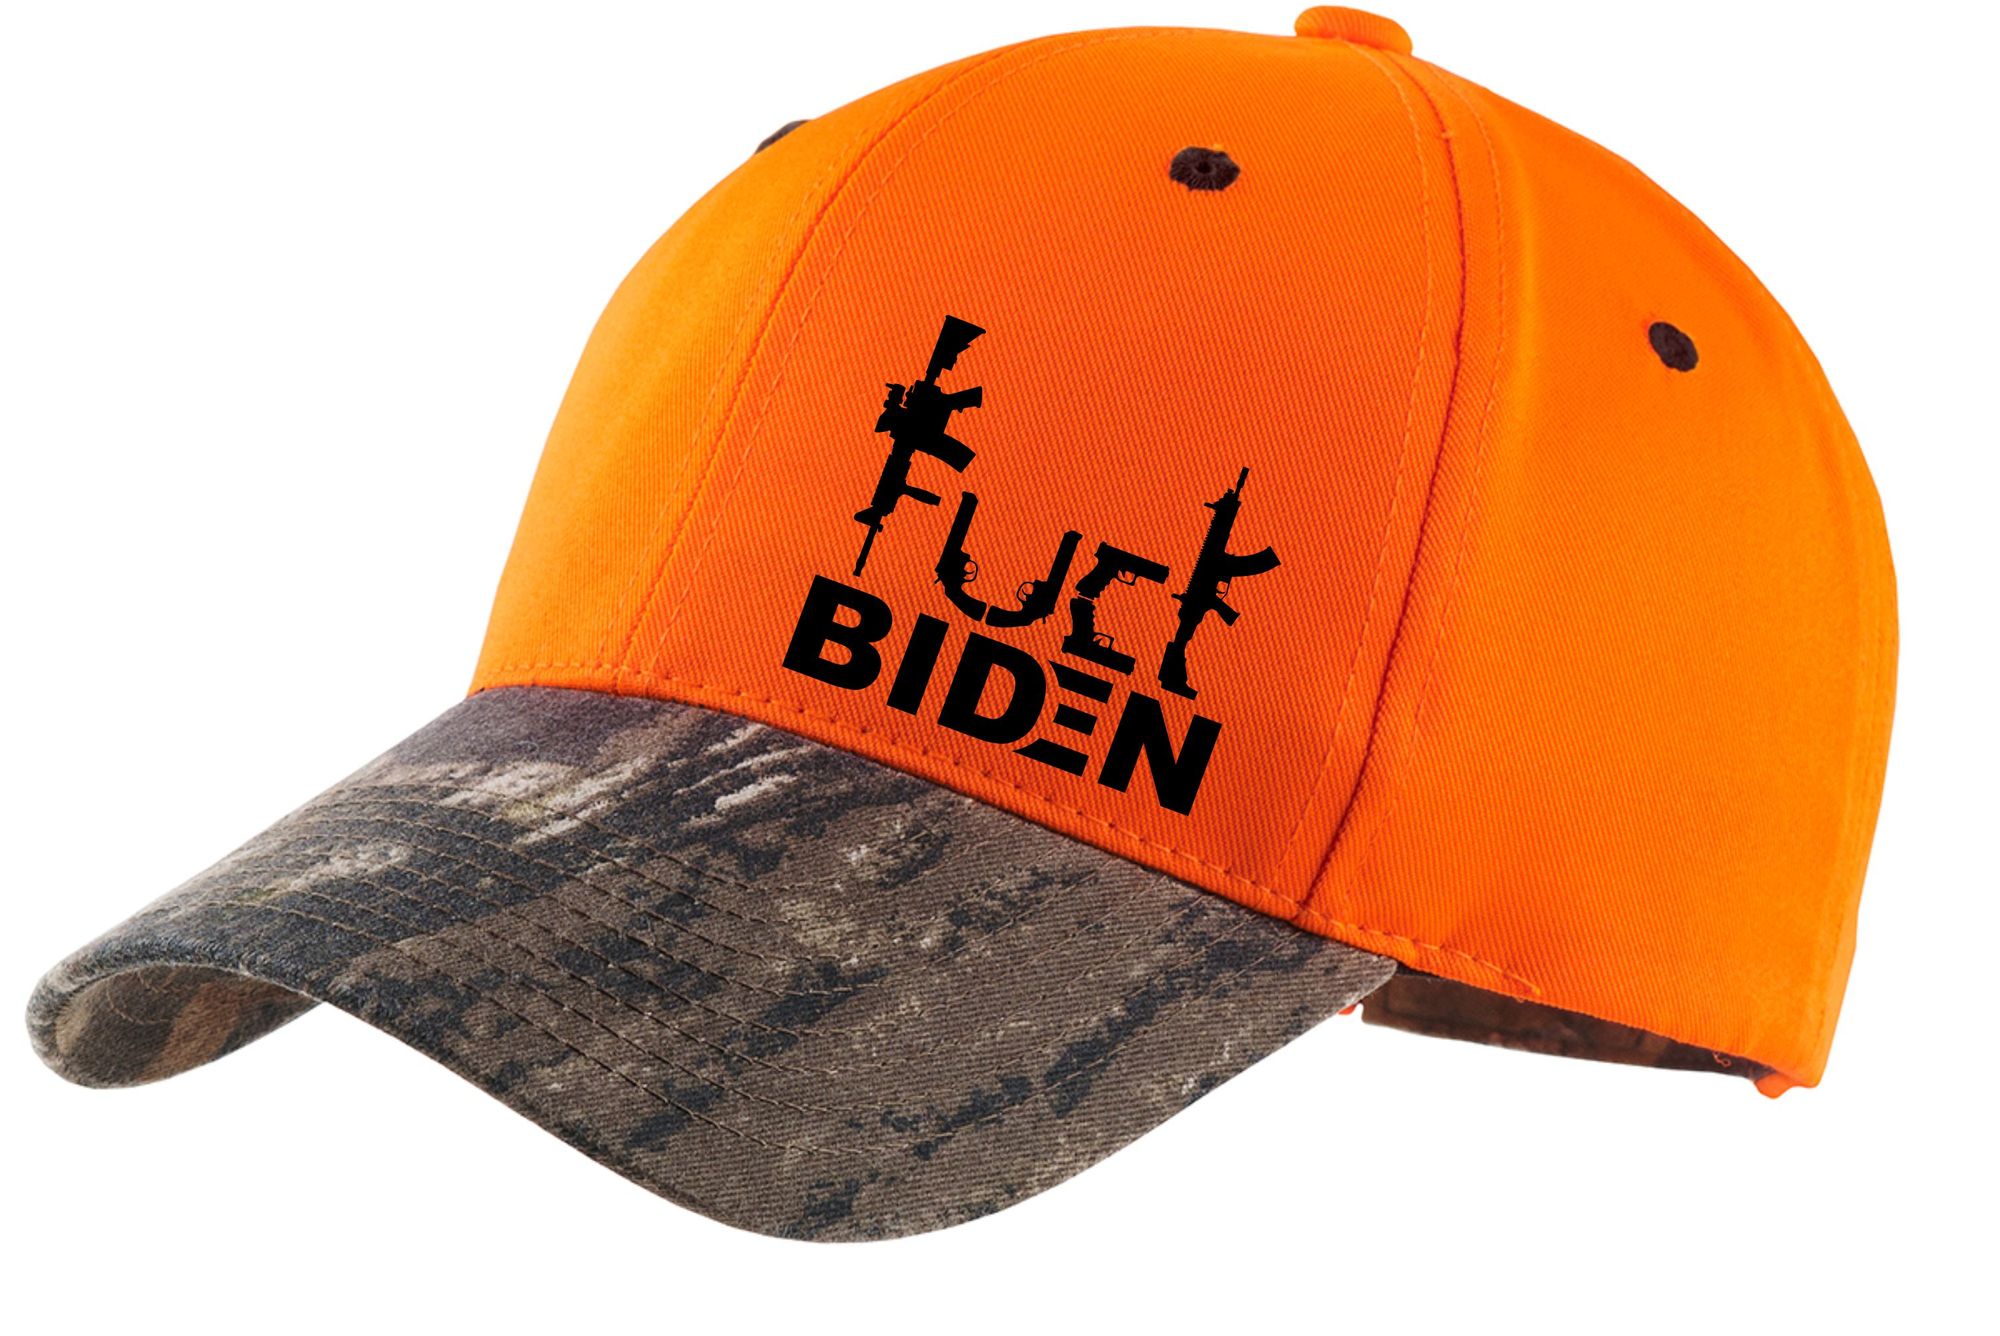 Guns Fuck Biden trucker cap 6